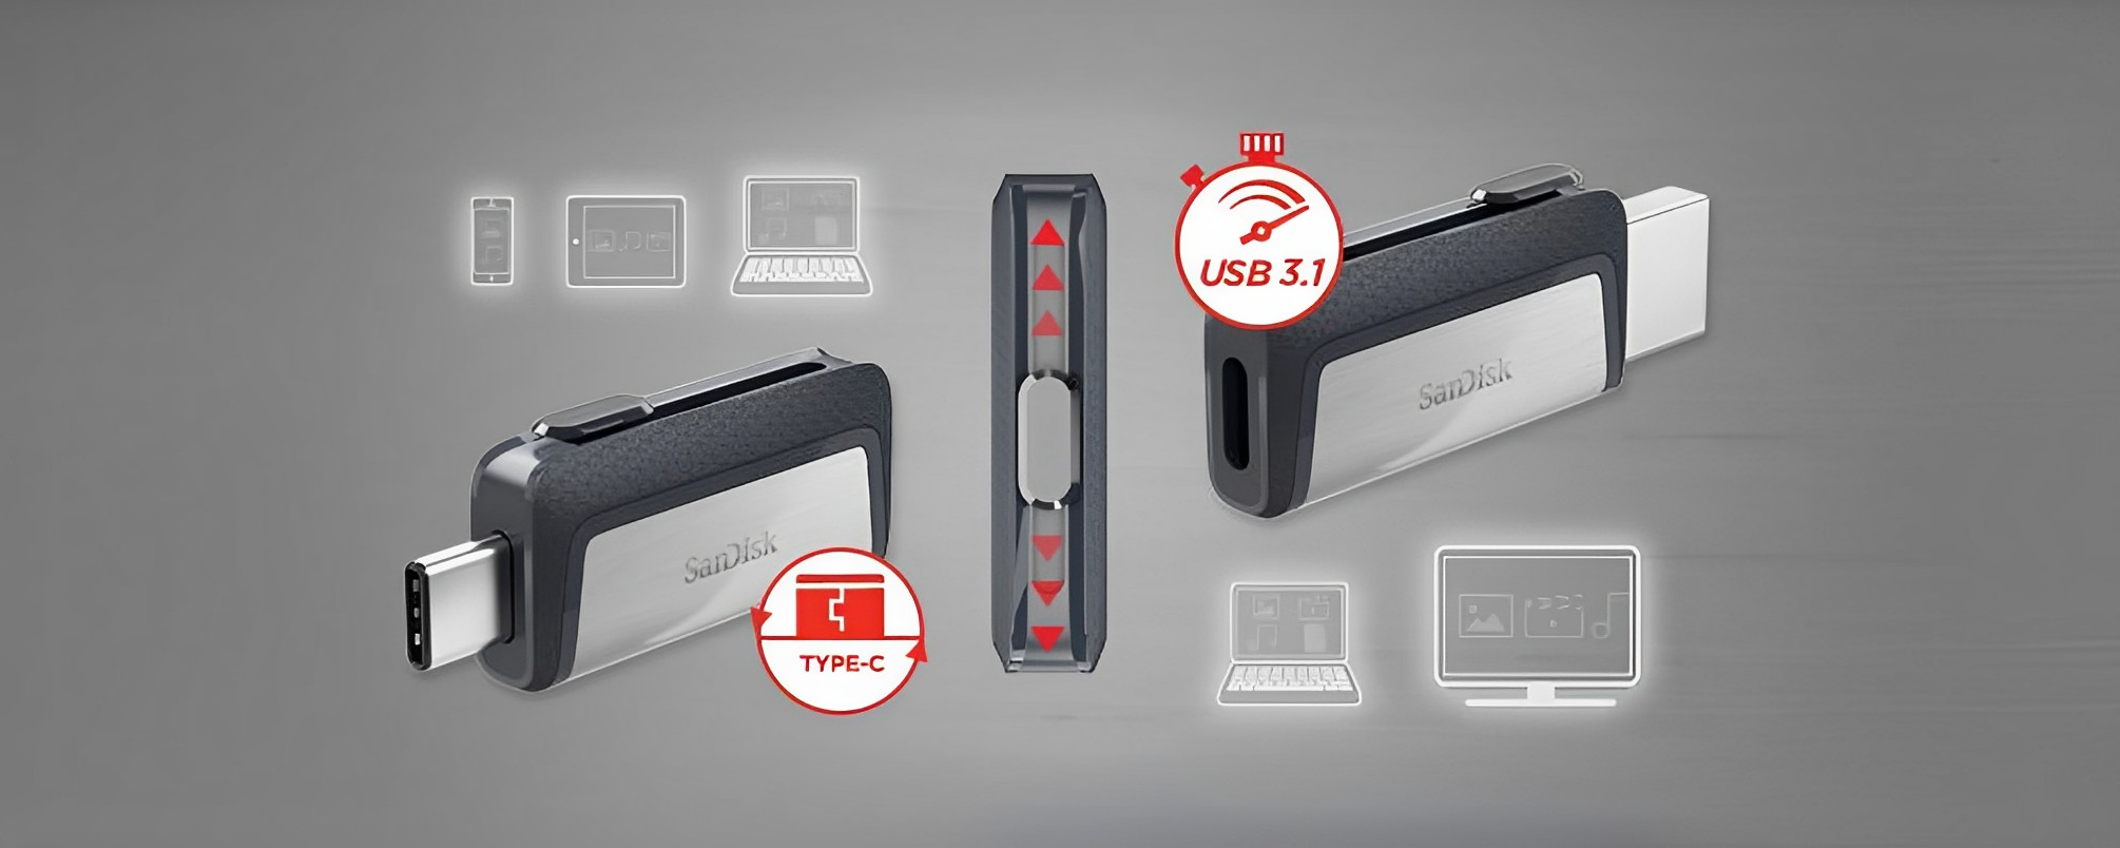 Chiavetta USB 128GB: doppia uscita per usarla con TUTTO (20€)